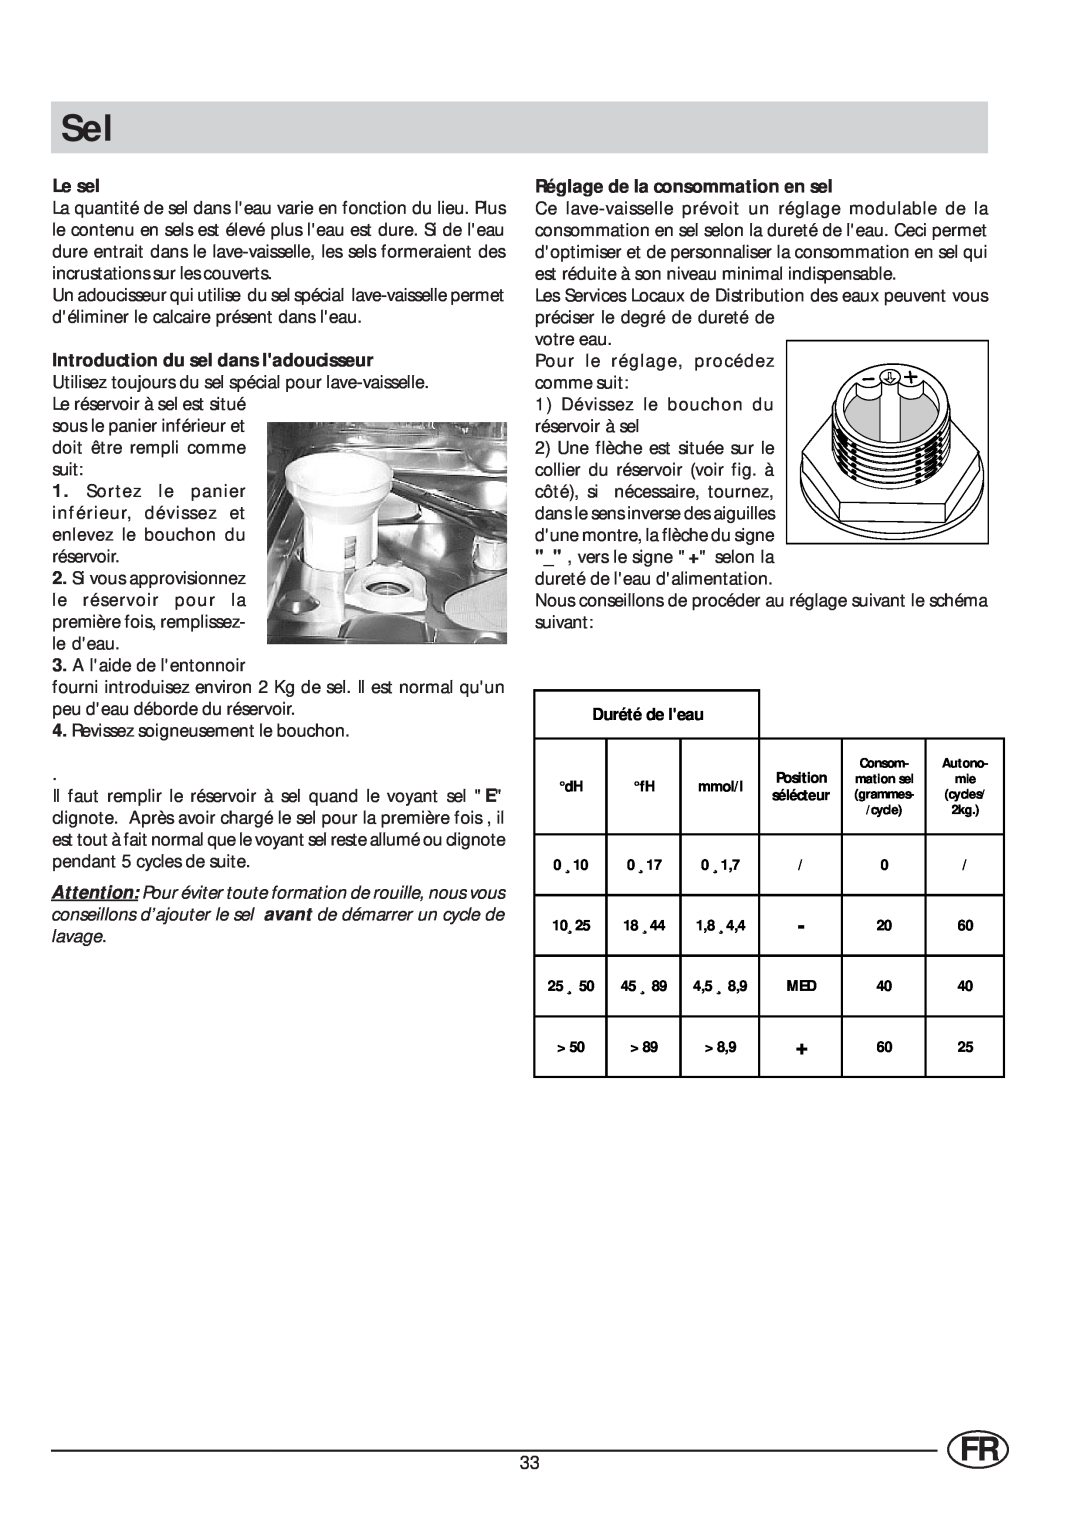 Indesit IDL 63 manual Le sel, Réglage de la consommation en sel 